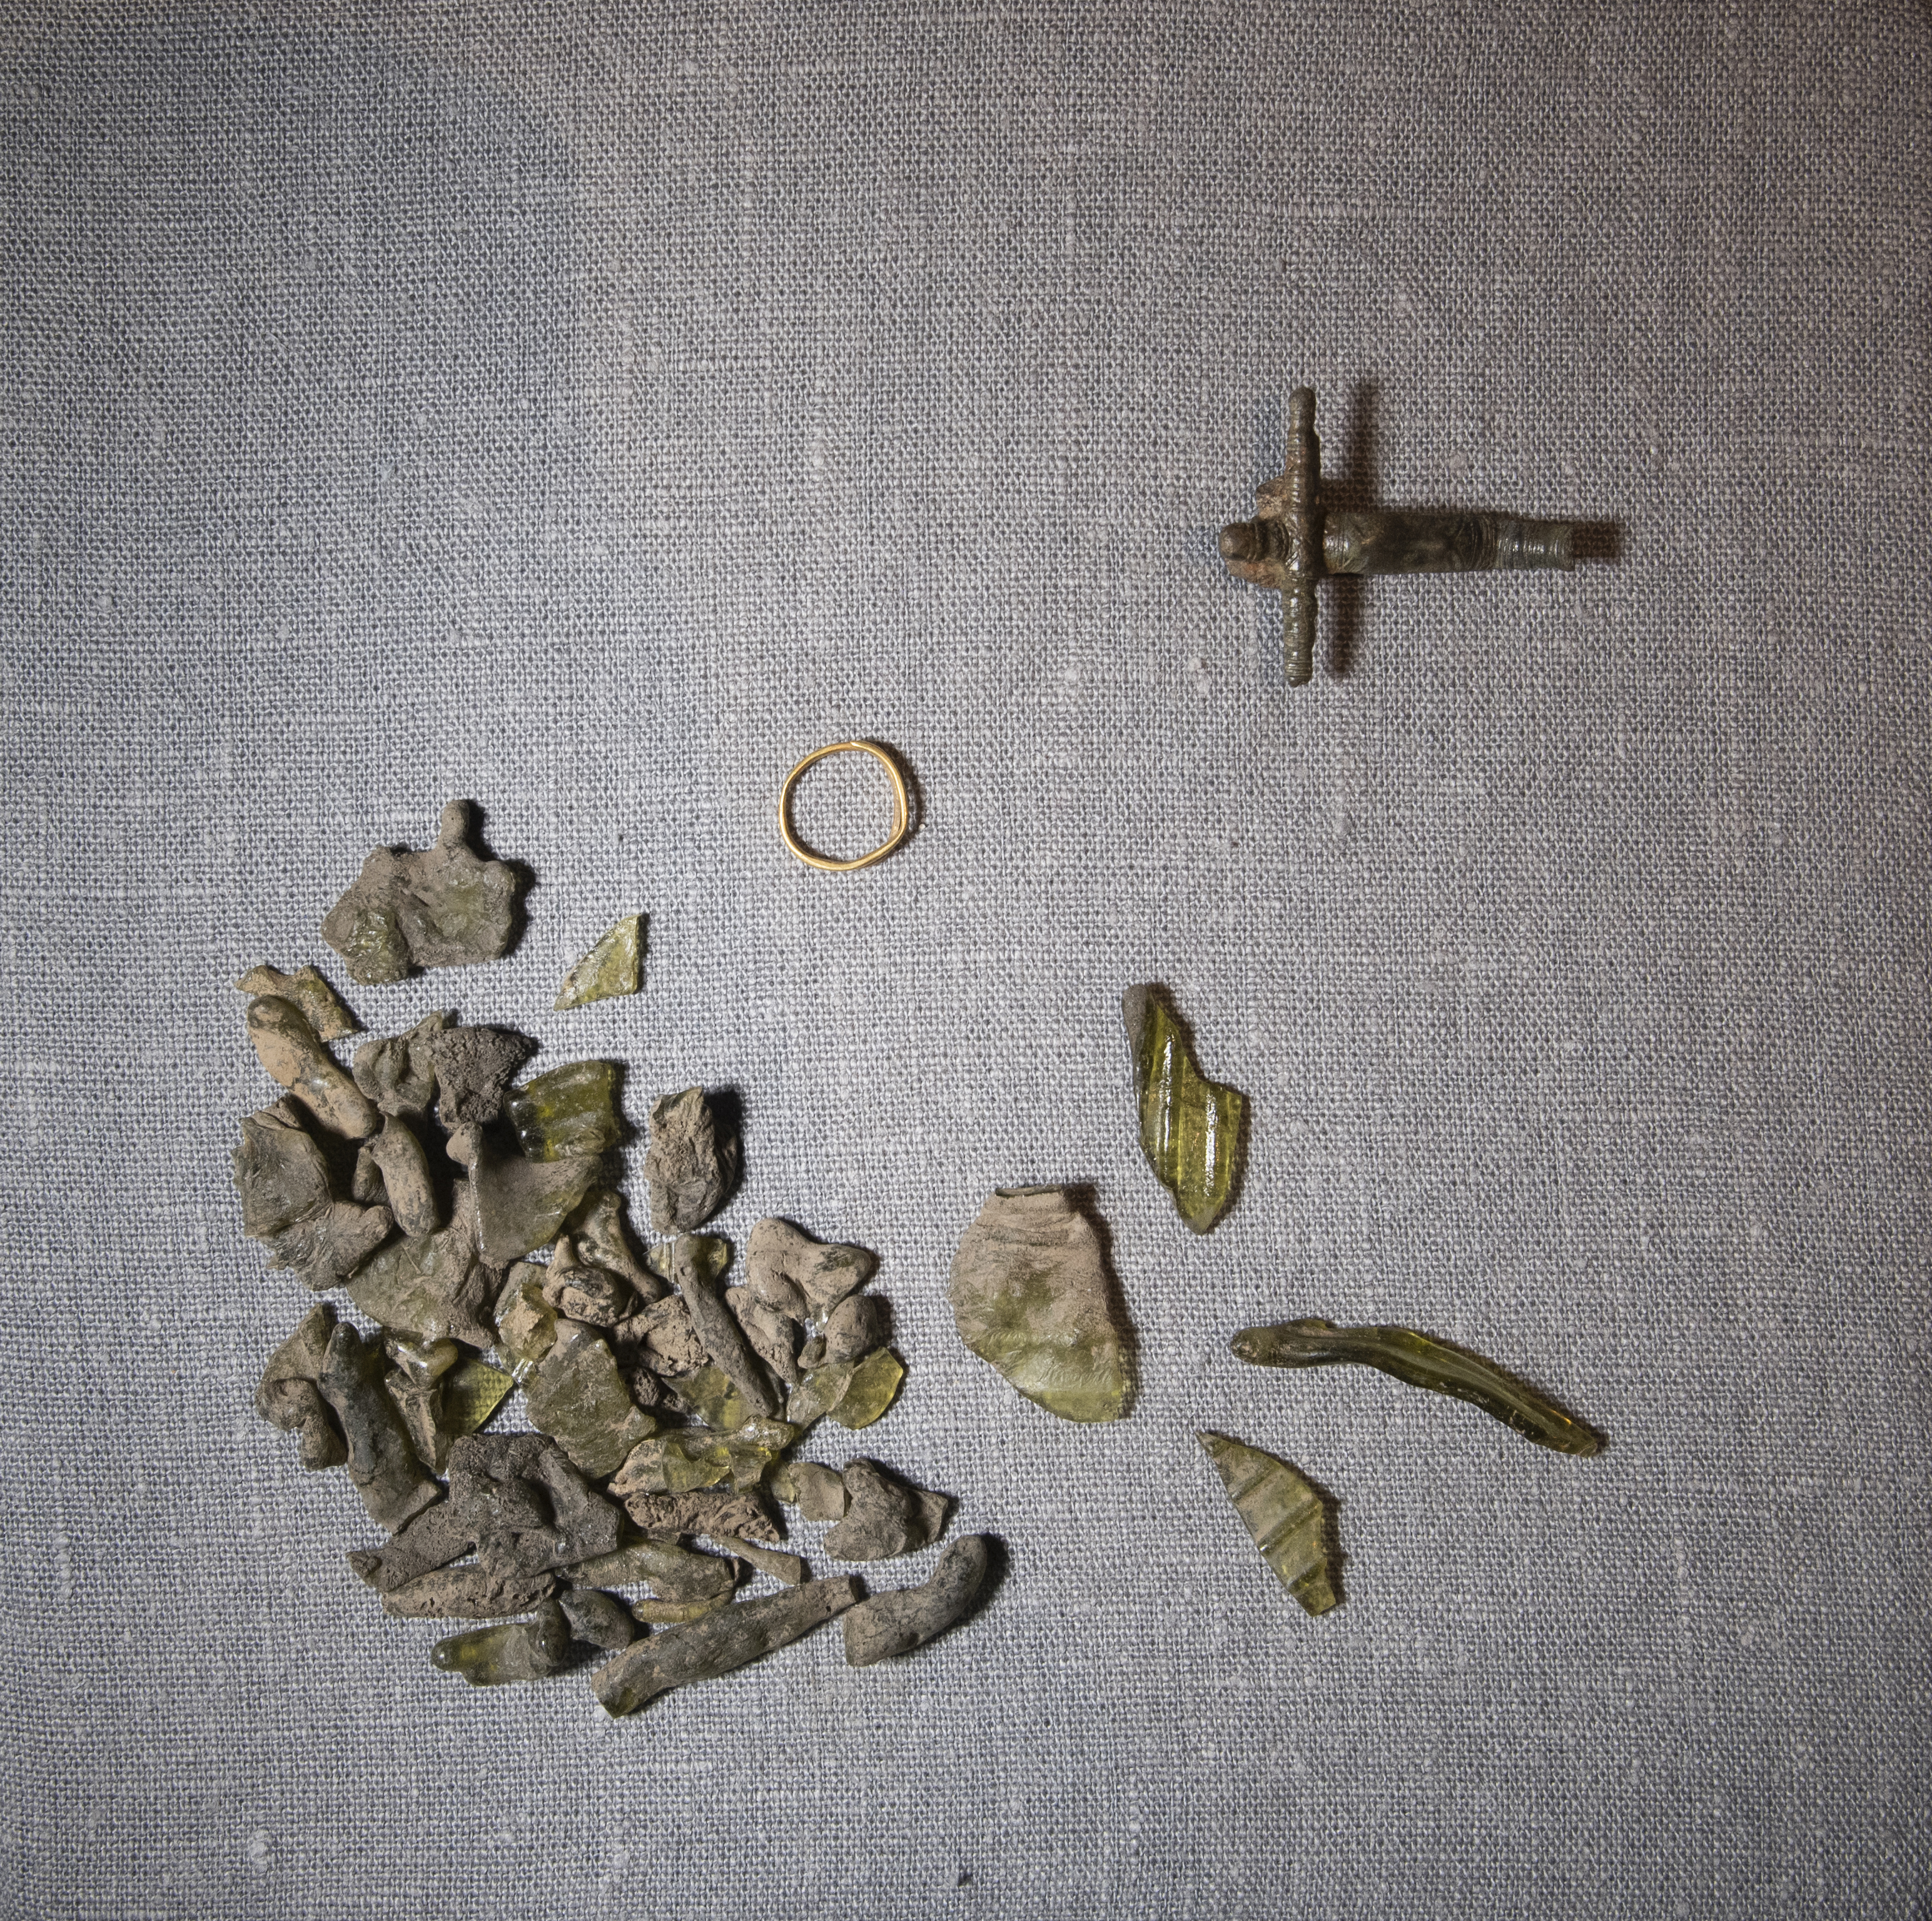 Olika fynd som hittats vid arkeologisk utgrävning, bland annat en ring, ihopsmält glasfragment och ett kors.